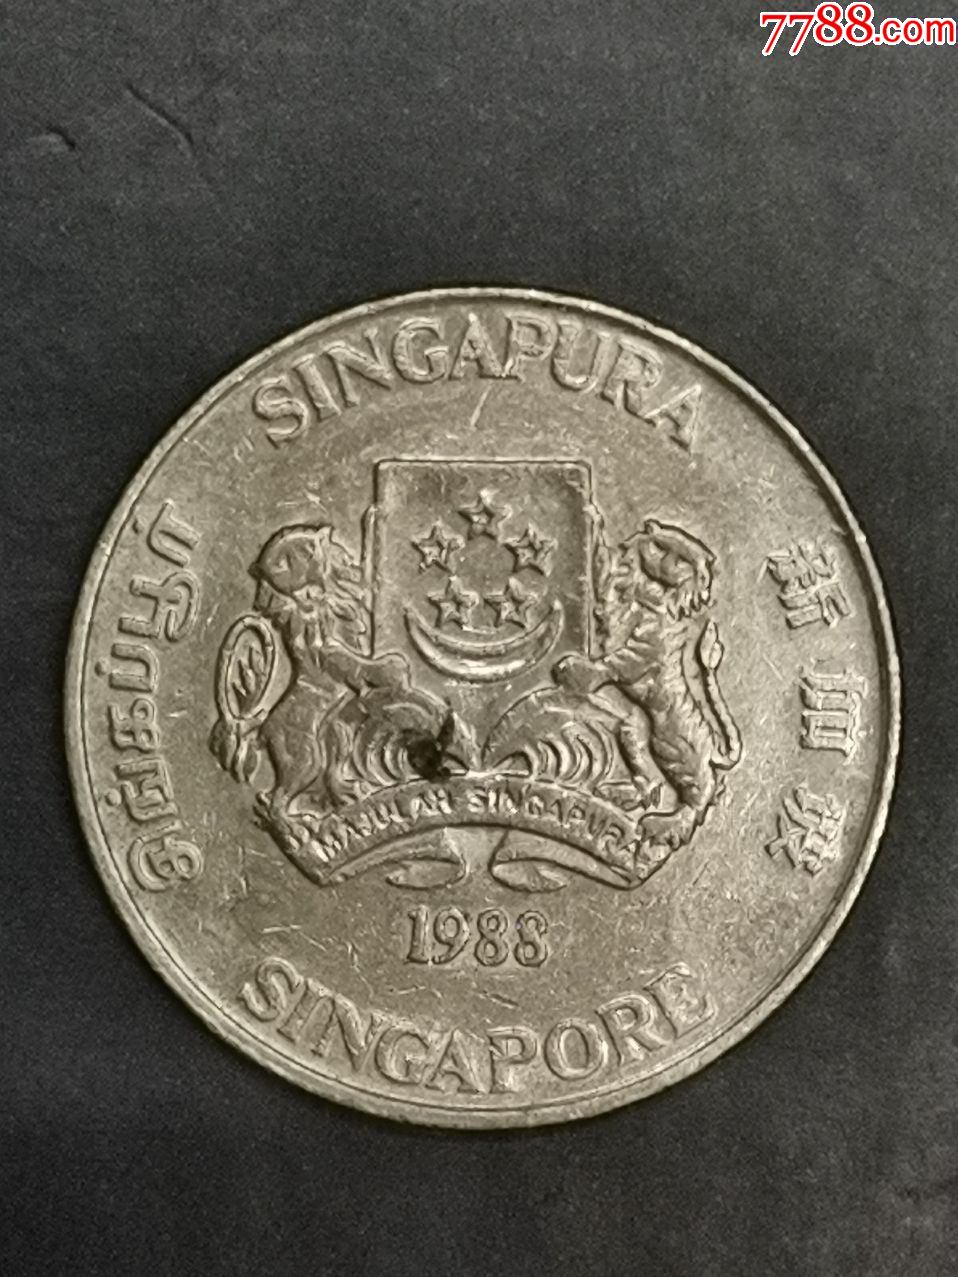 新加坡1988年20分